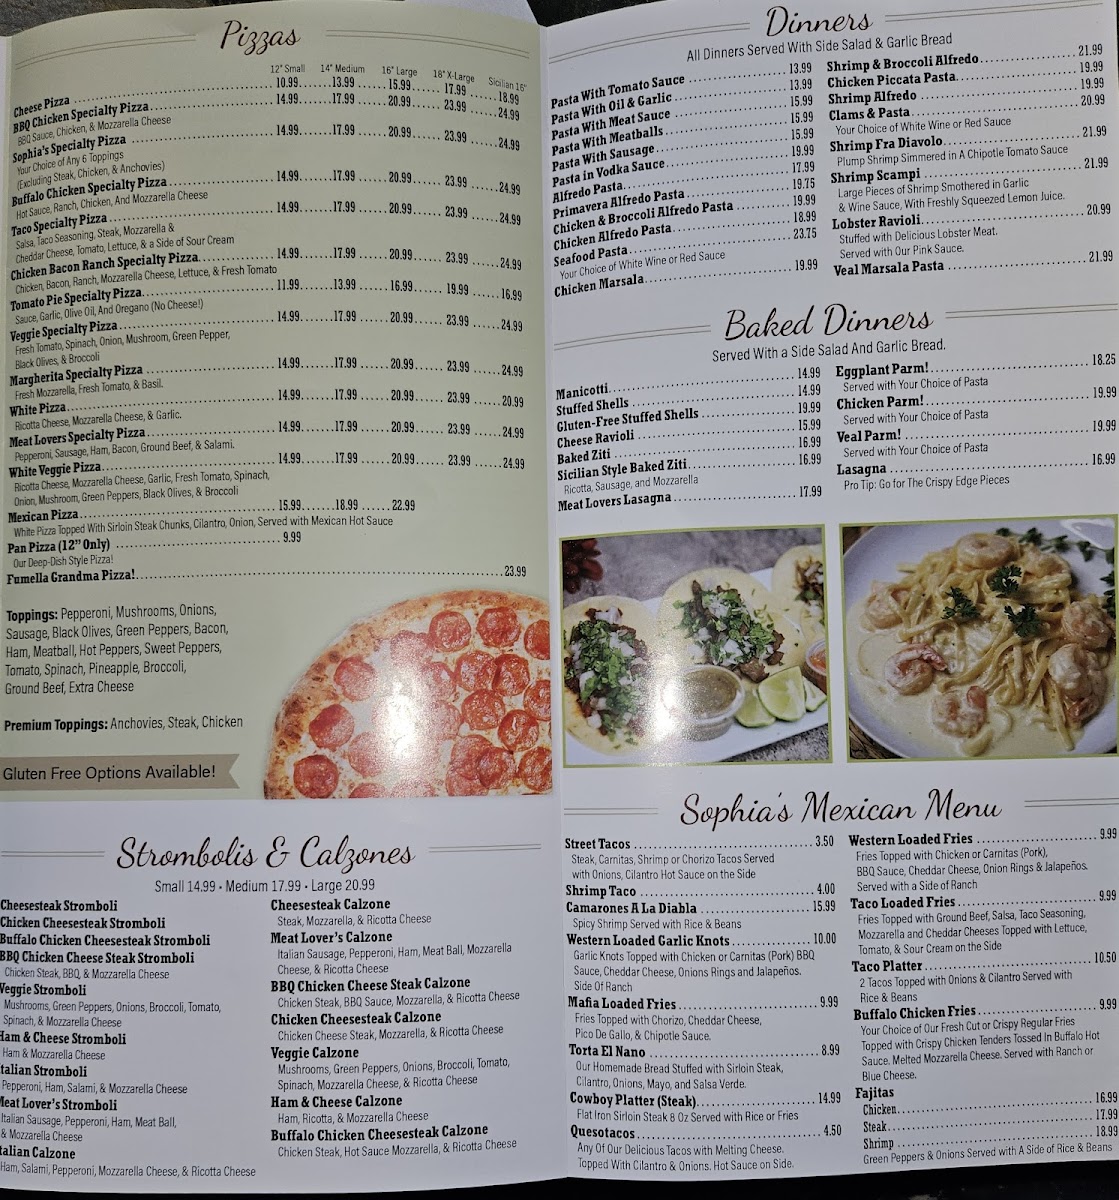 Sophia's Italian Restaurant & Pizzeria gluten-free menu